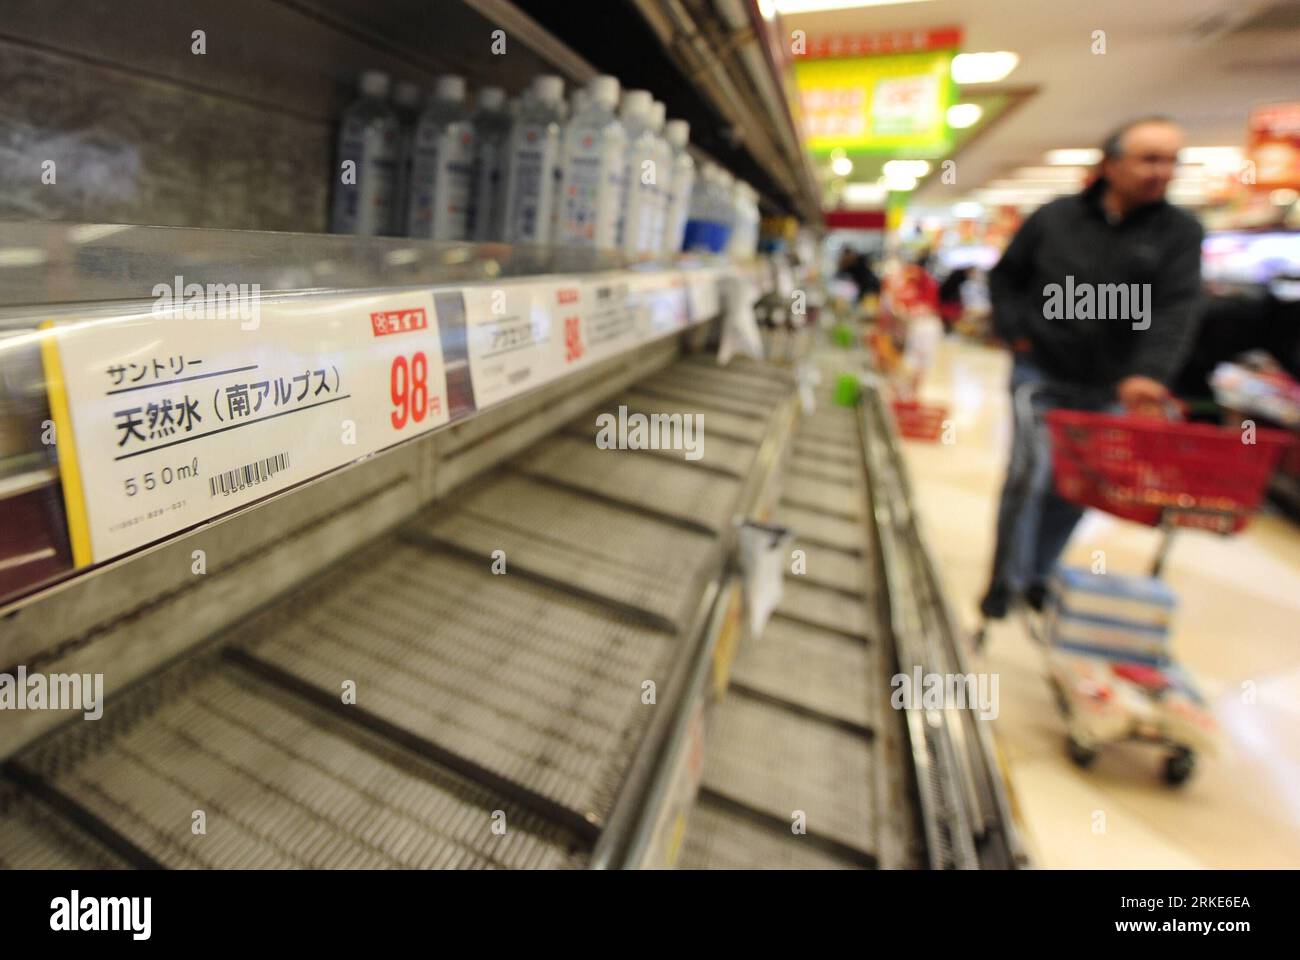 (110324) -- TOKYO, 24 marzo 2011 (Xinhua) -- gli scaffali di bevande in bottiglia sono vuoti in un minimarket di Tokyo il 24 marzo 2011. Le autorità giapponesi hanno sconsigliato ai bambini di bere acqua di rubinetto a Tokyo a causa dell'aumento dei livelli di radiazioni il 23 marzo. Di conseguenza, molti negozi a Tokyo stavano esaurendo l'acqua in bottiglia giovedì. (Xinhua/Ji Chunpeng) (xhn) GIAPPONE-TOKYO-ACQUA IN BOTTIGLIA CHE SCORRE PUBLICATIONxNOTxINxCHN 110324 Tokyo 24 marzo 2011 XINHUA scaffali di bevande in bottiglia sono vuoti IN un minimarket di Tokyo IL 24 marzo 2011 le autorità giapponesi hanno sconsigliato l'autorizzazione dei neonati Foto Stock